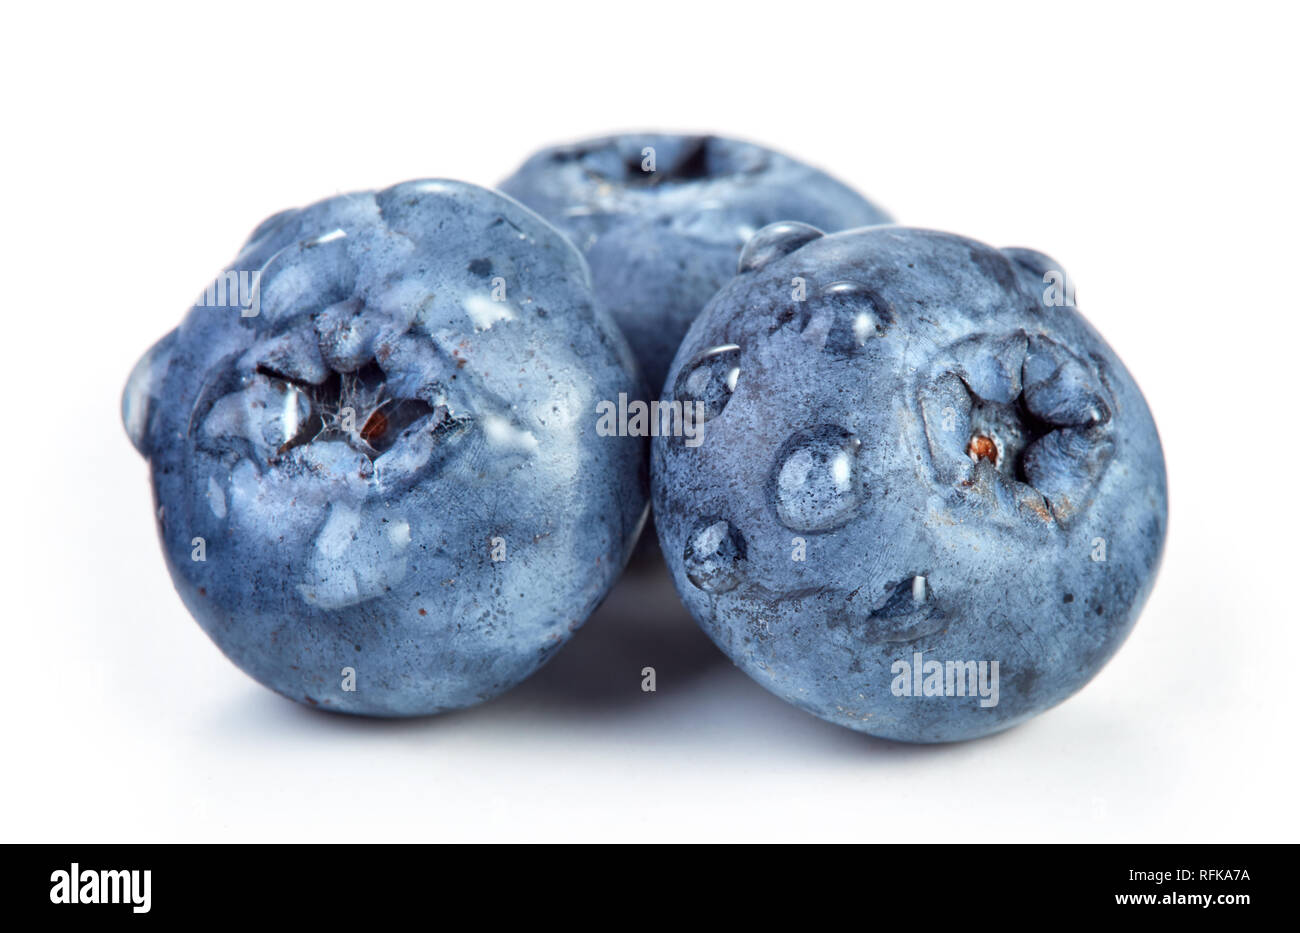 Haufen der Blaubeere Früchte auf weißem Hintergrund Stockfoto